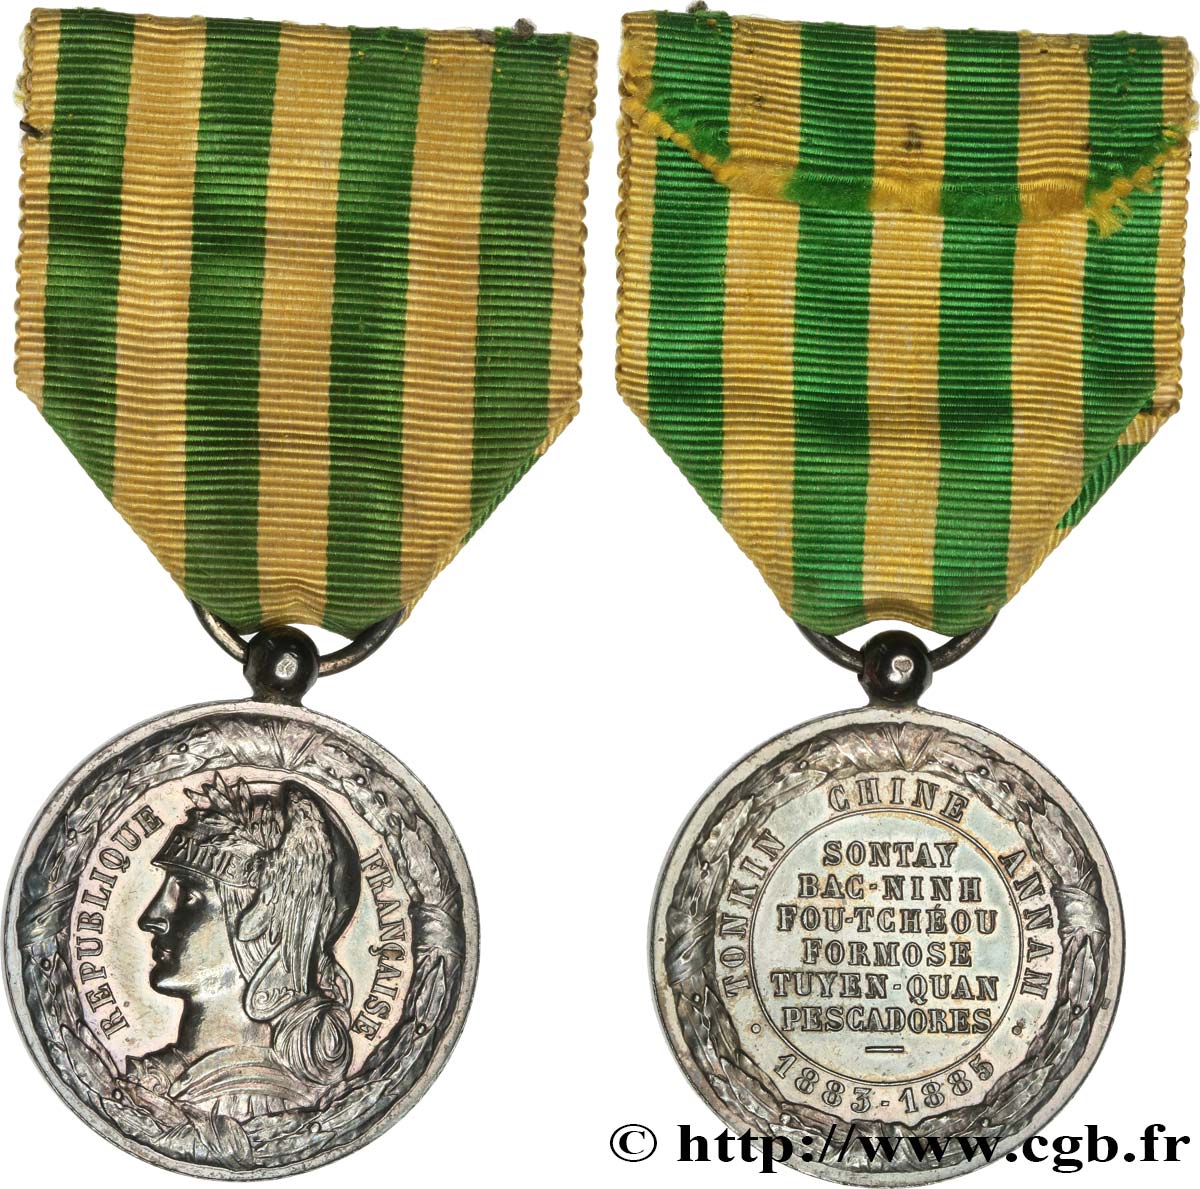 III REPUBLIC Médaille commémorative, Expédition du Tonkin AU